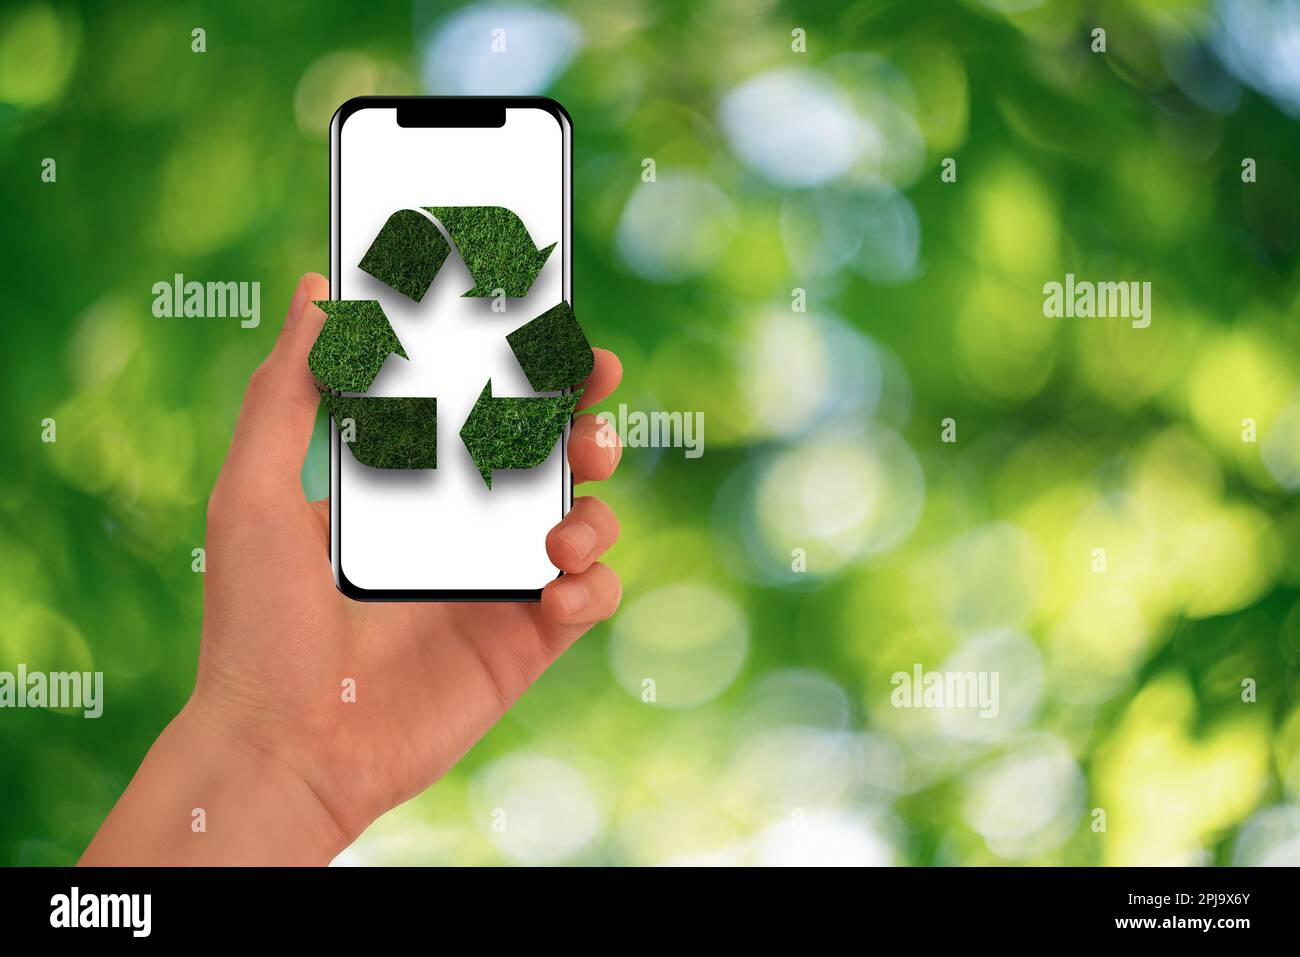 Un homme tient un téléphone avec un symbole de recyclage vert. Concept. Photo de haute qualité Banque D'Images